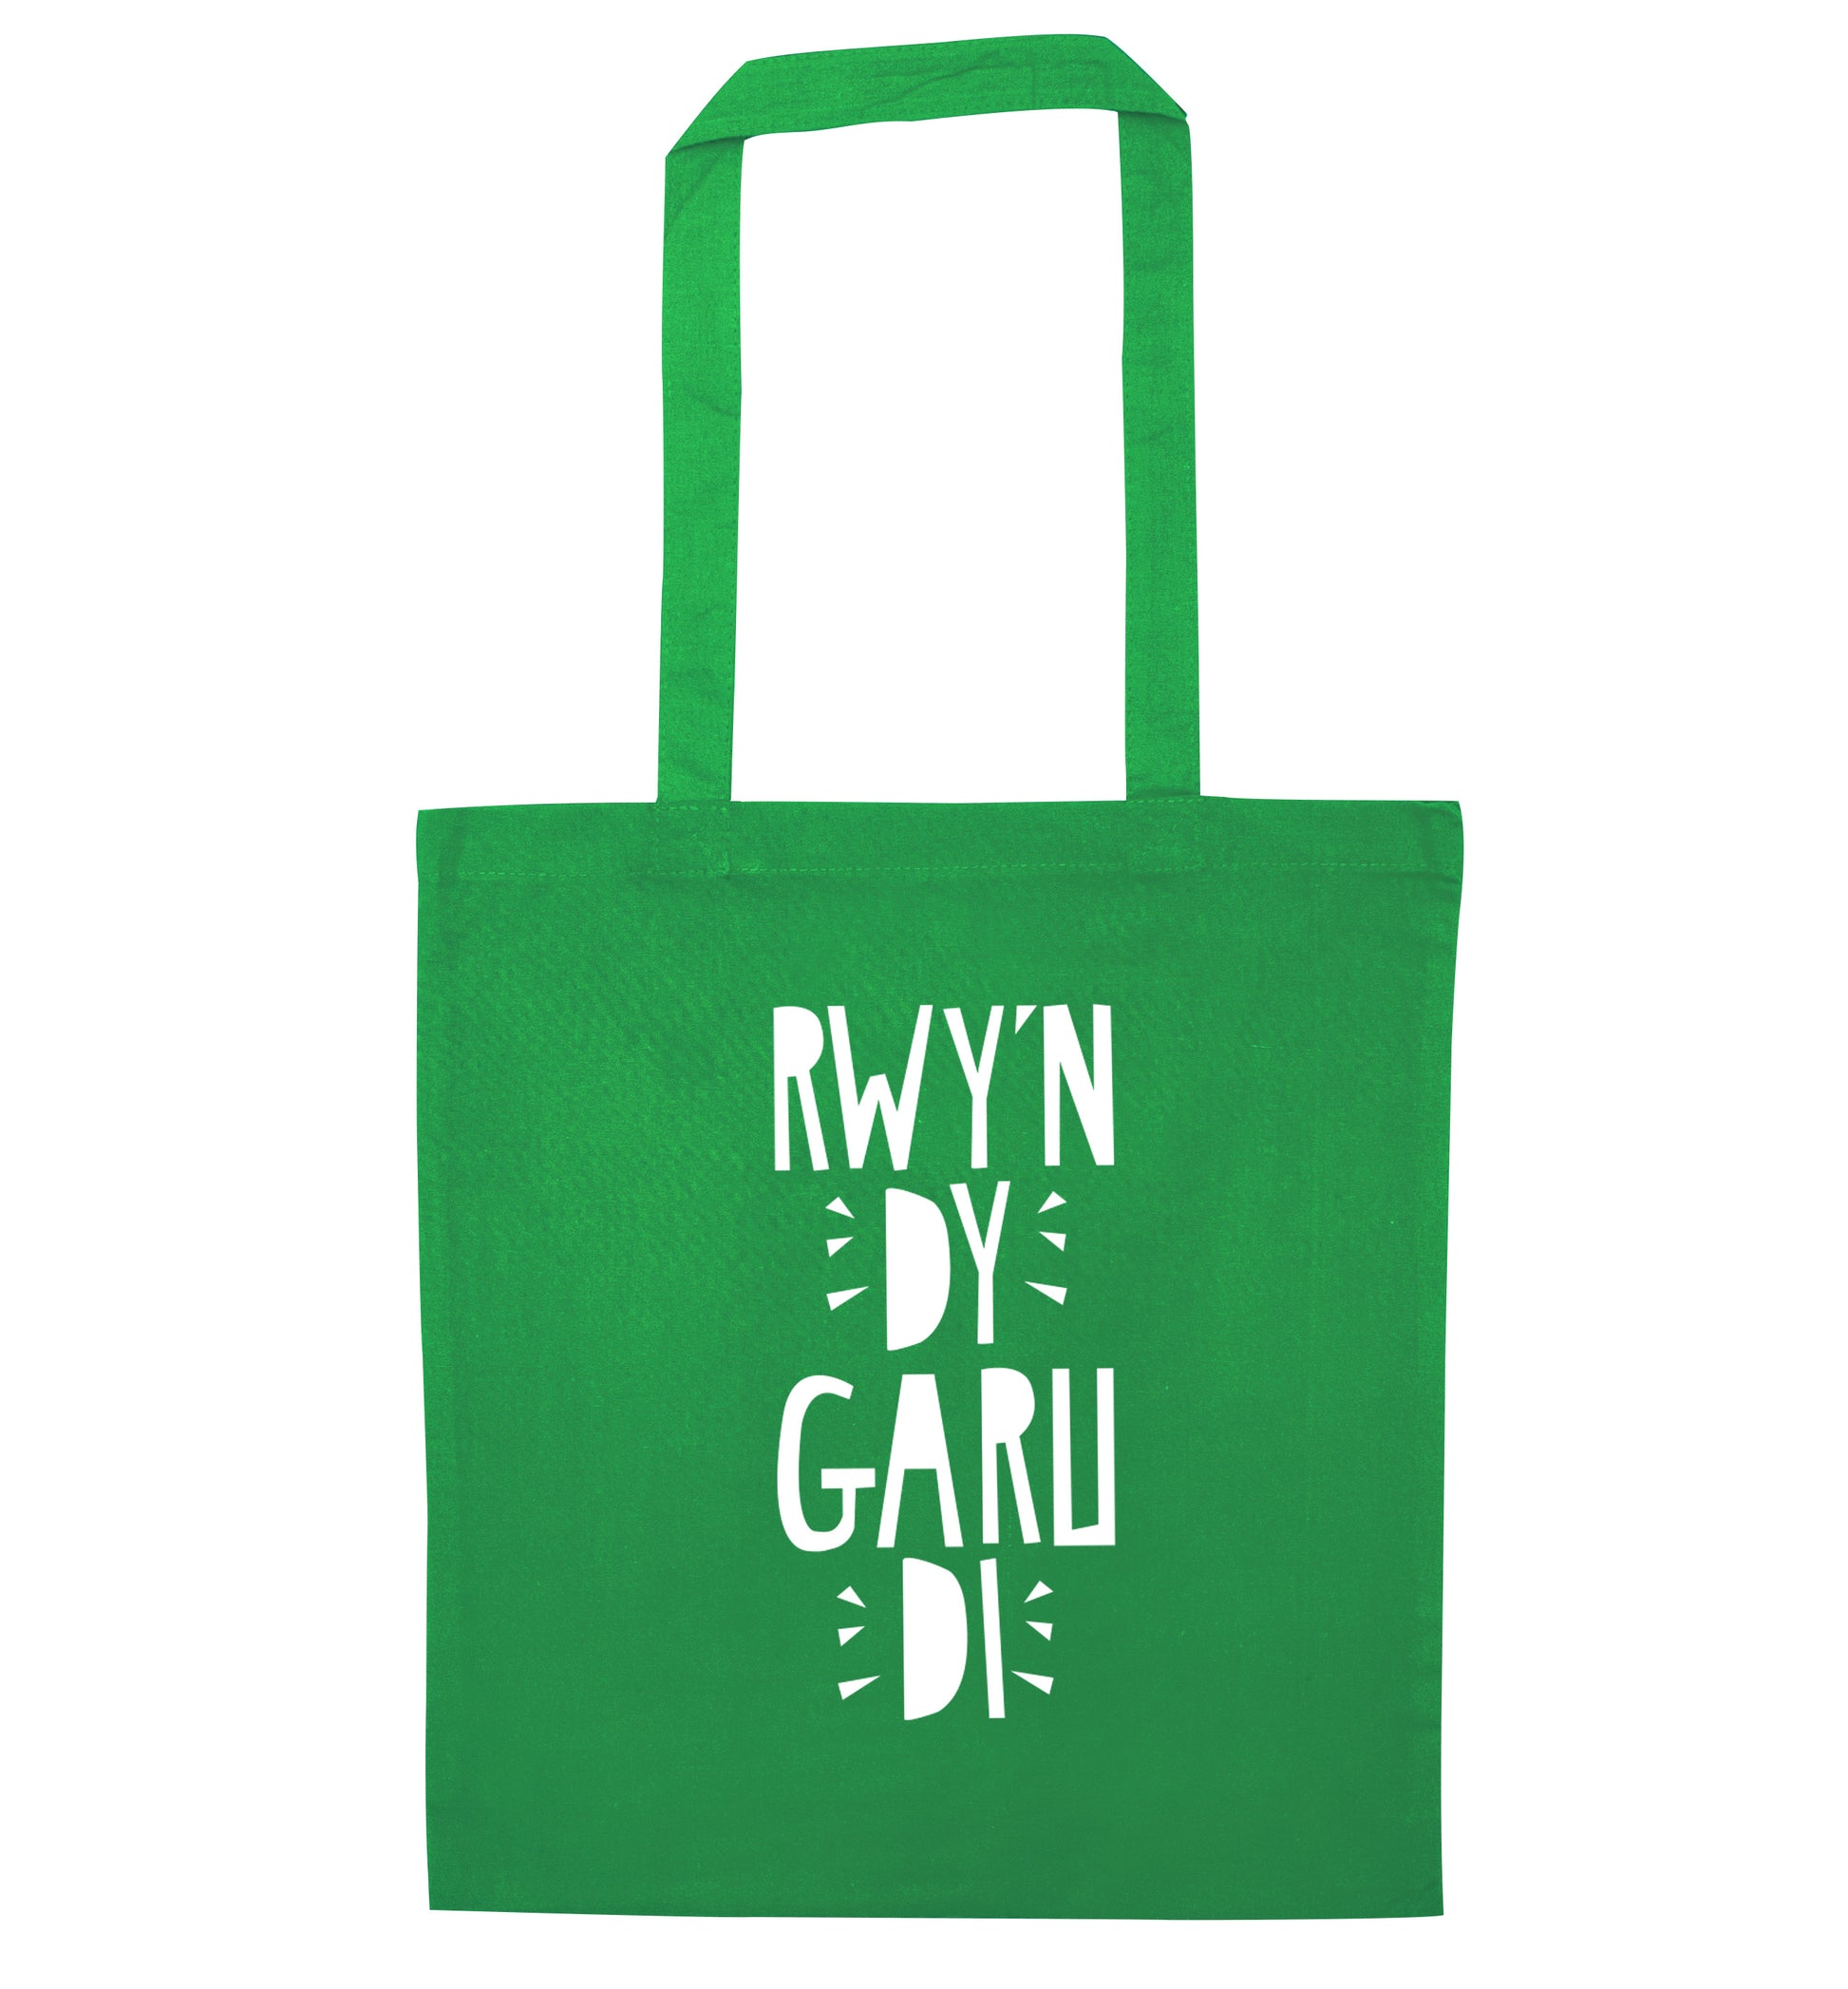 Rwy'n dy garu di - I love you green tote bag